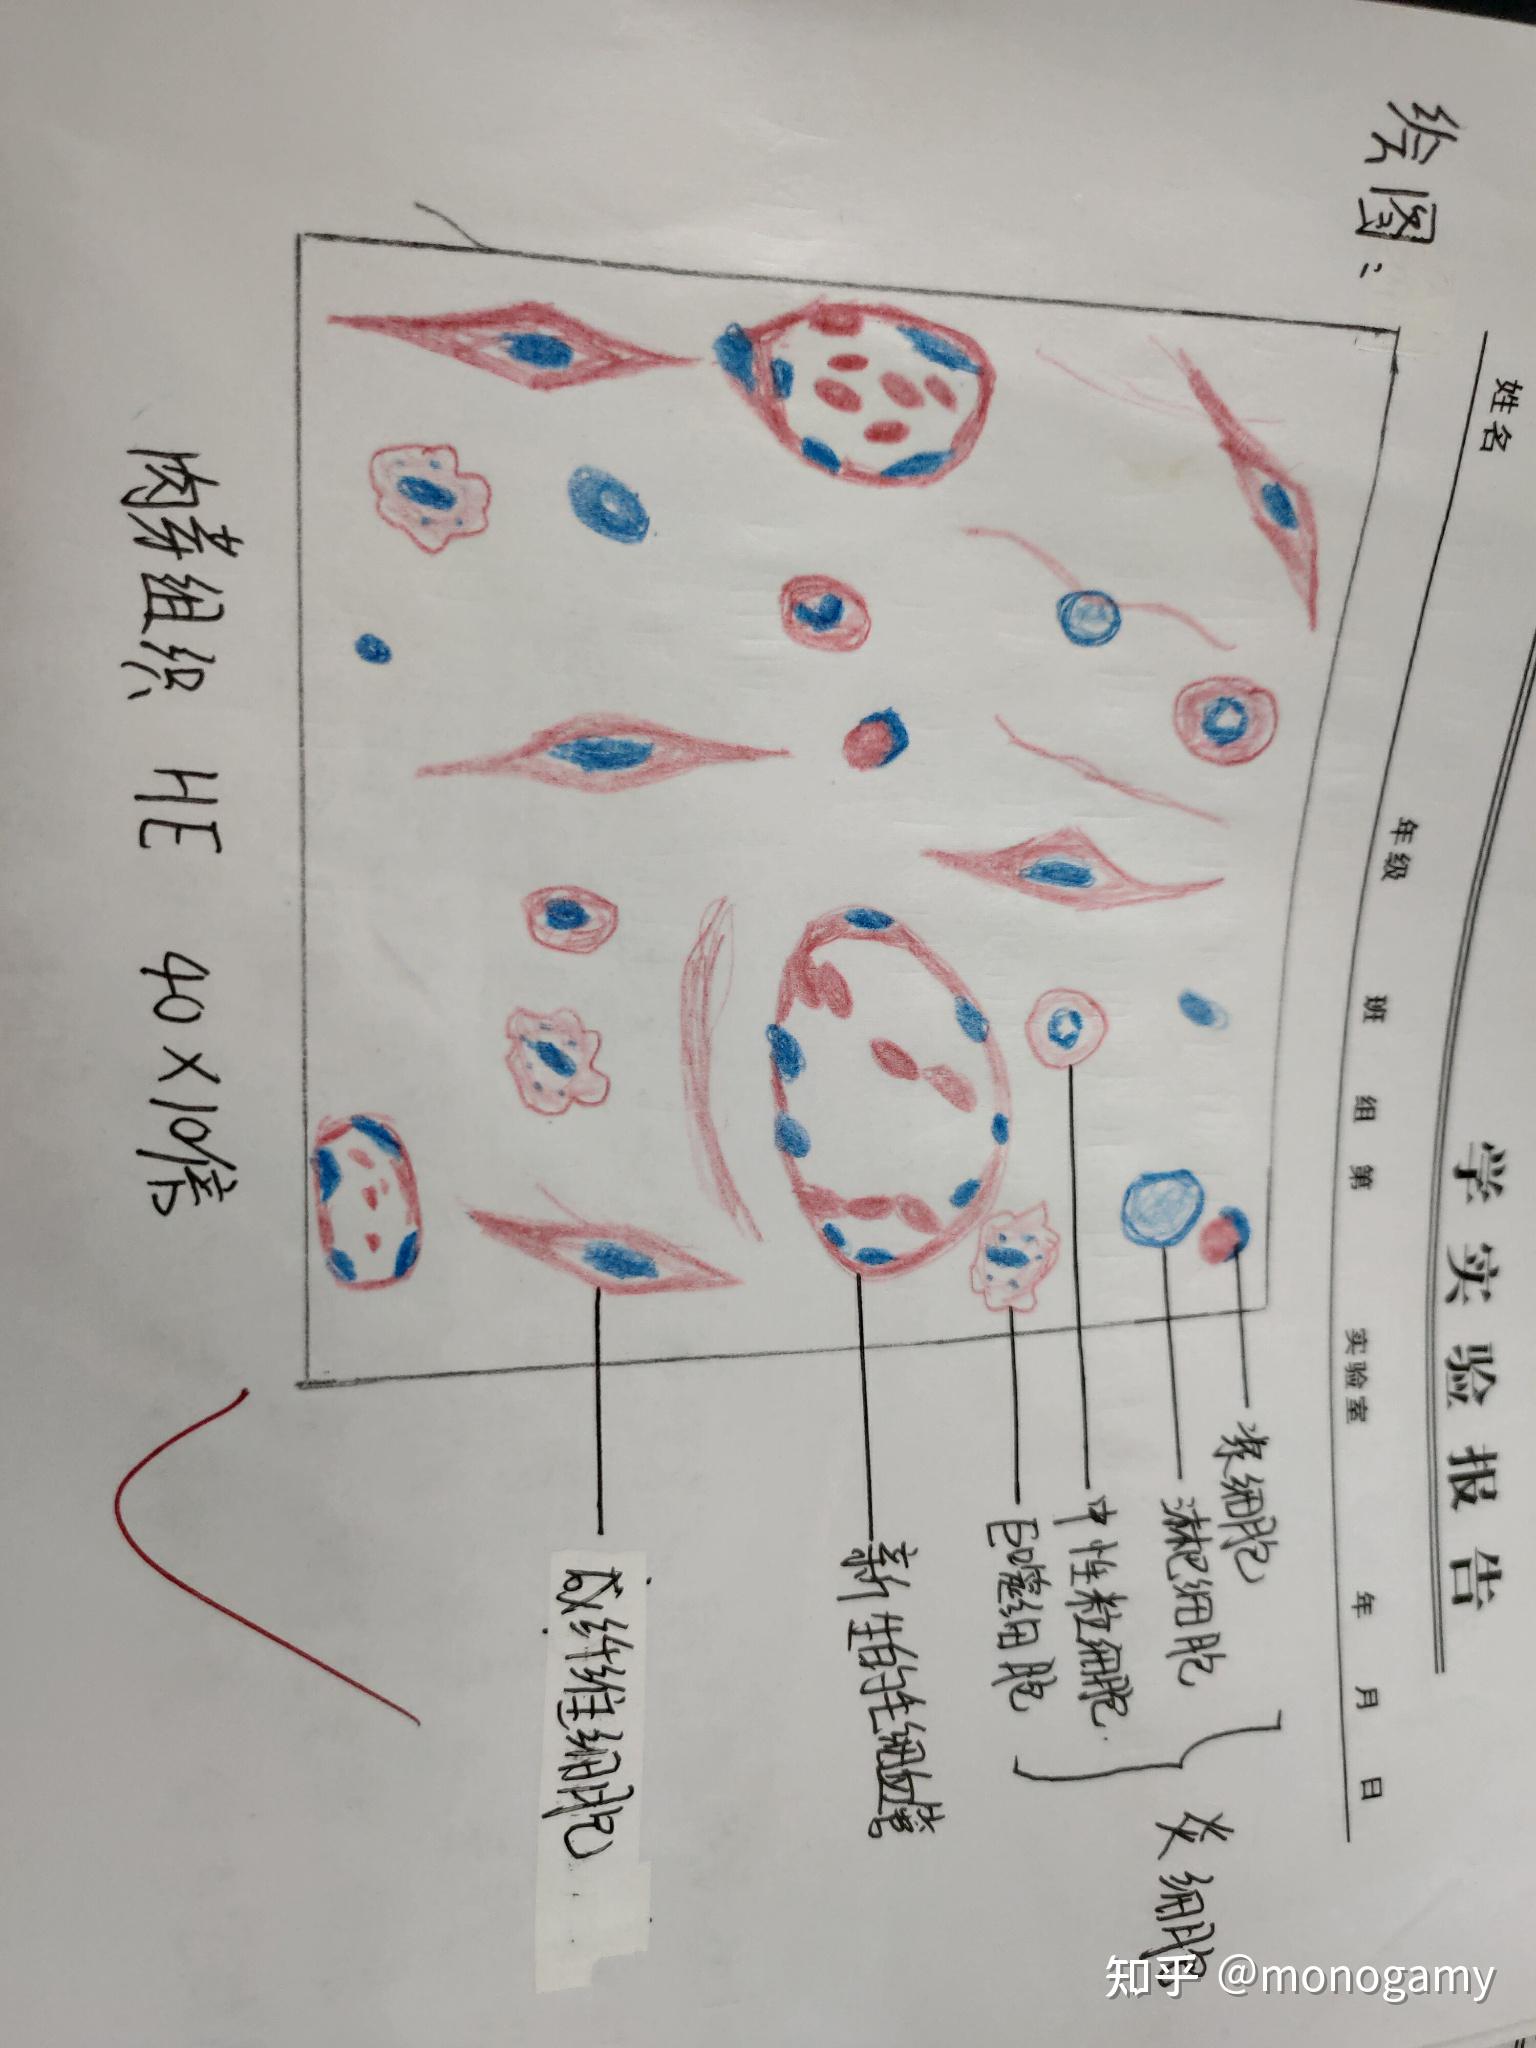 炎性肉芽组织红蓝铅笔图片